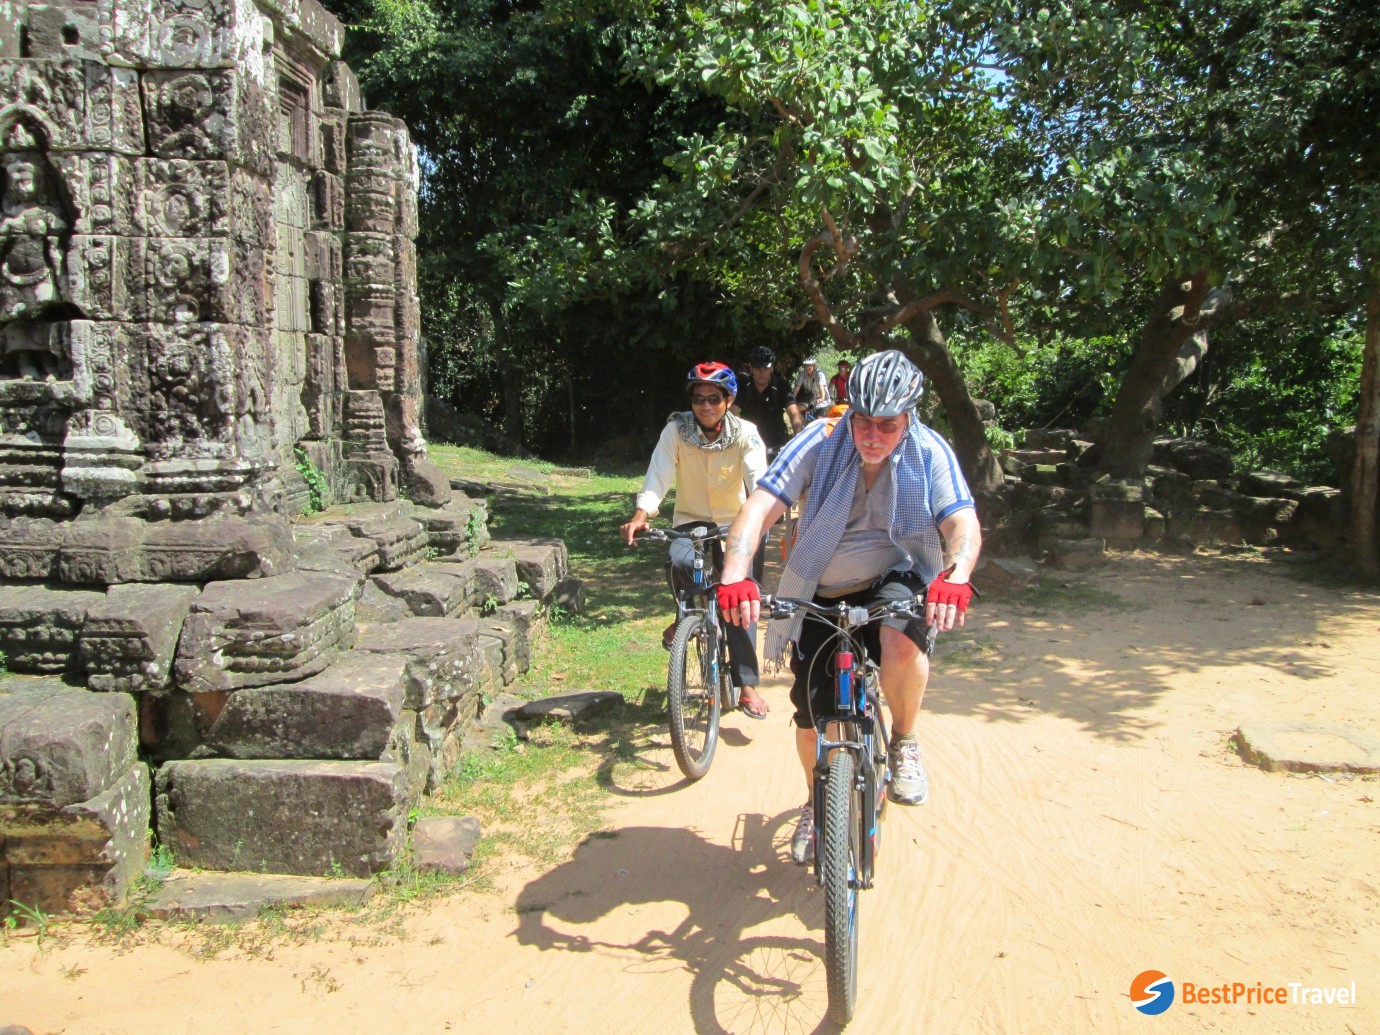 Biking to visit temples